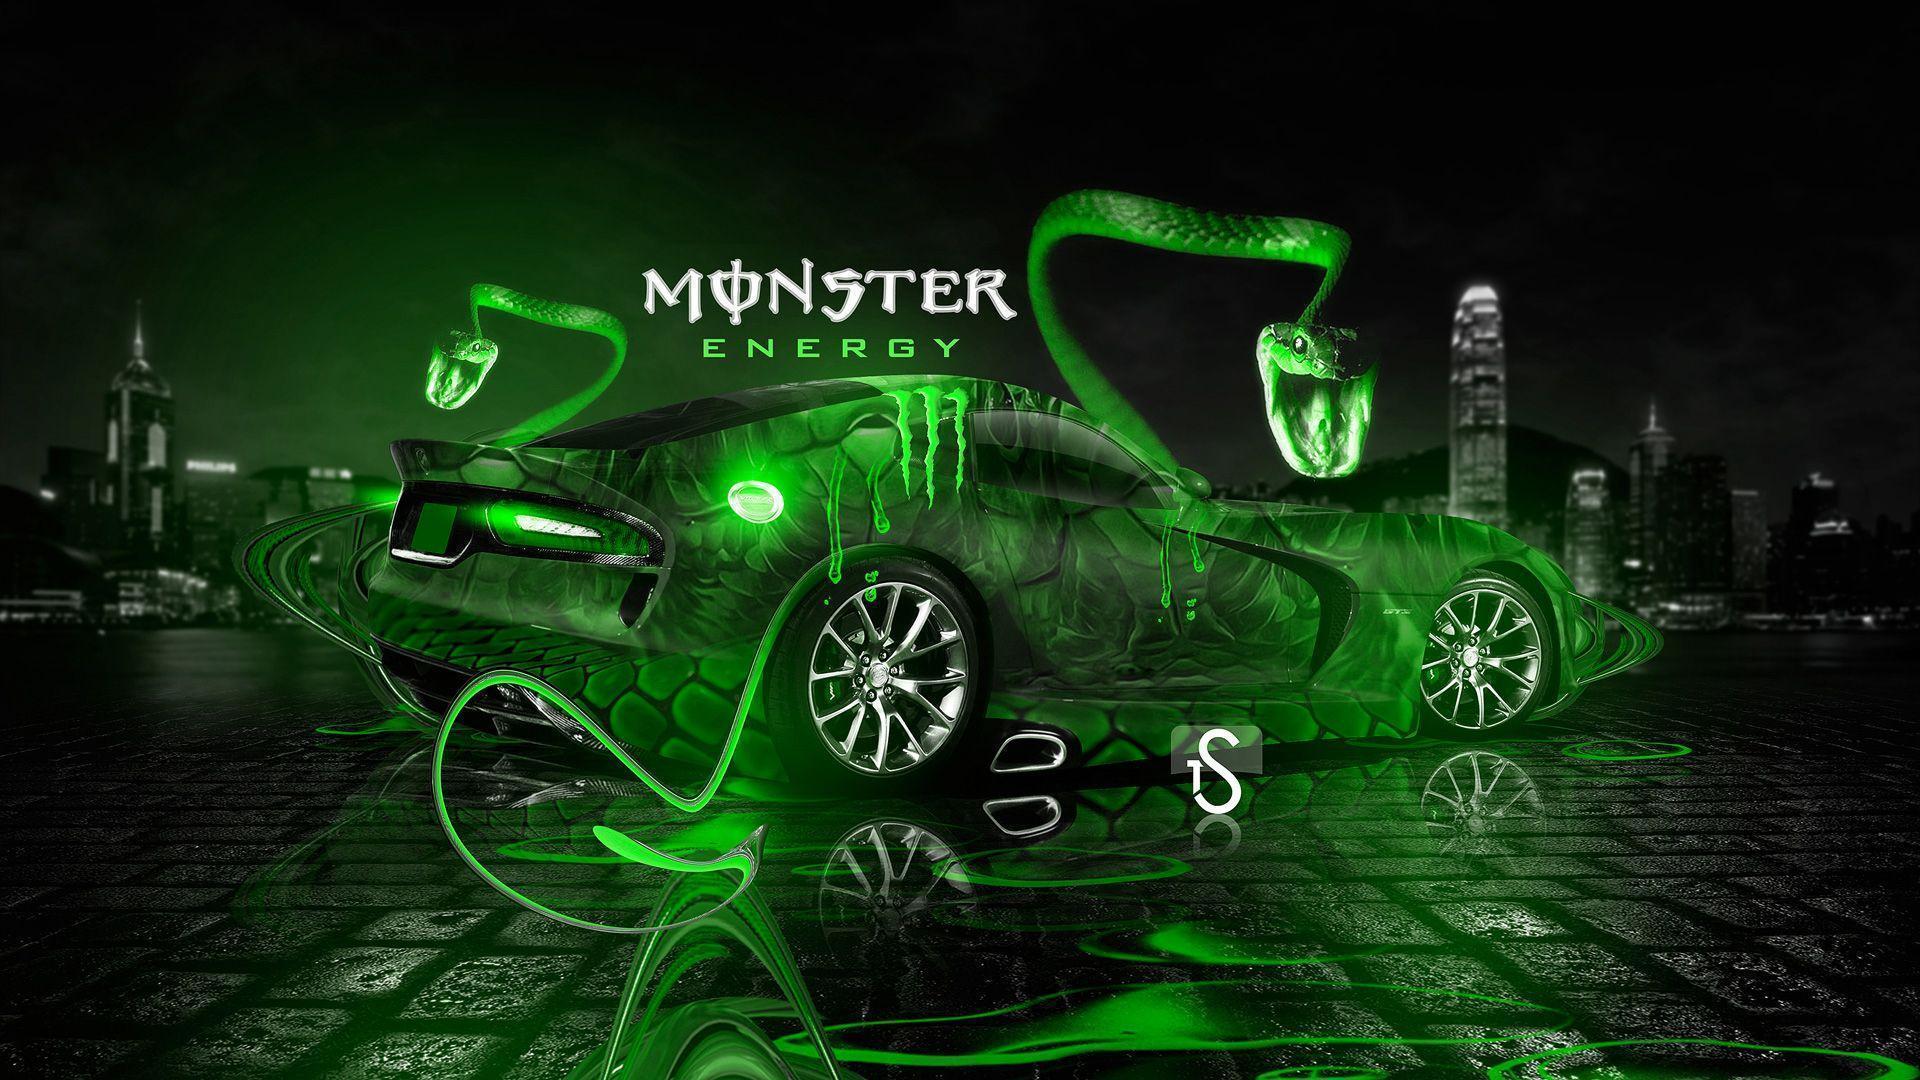 Monster Energy Wallpaper HD. Wallpaper, Background, Image, Art